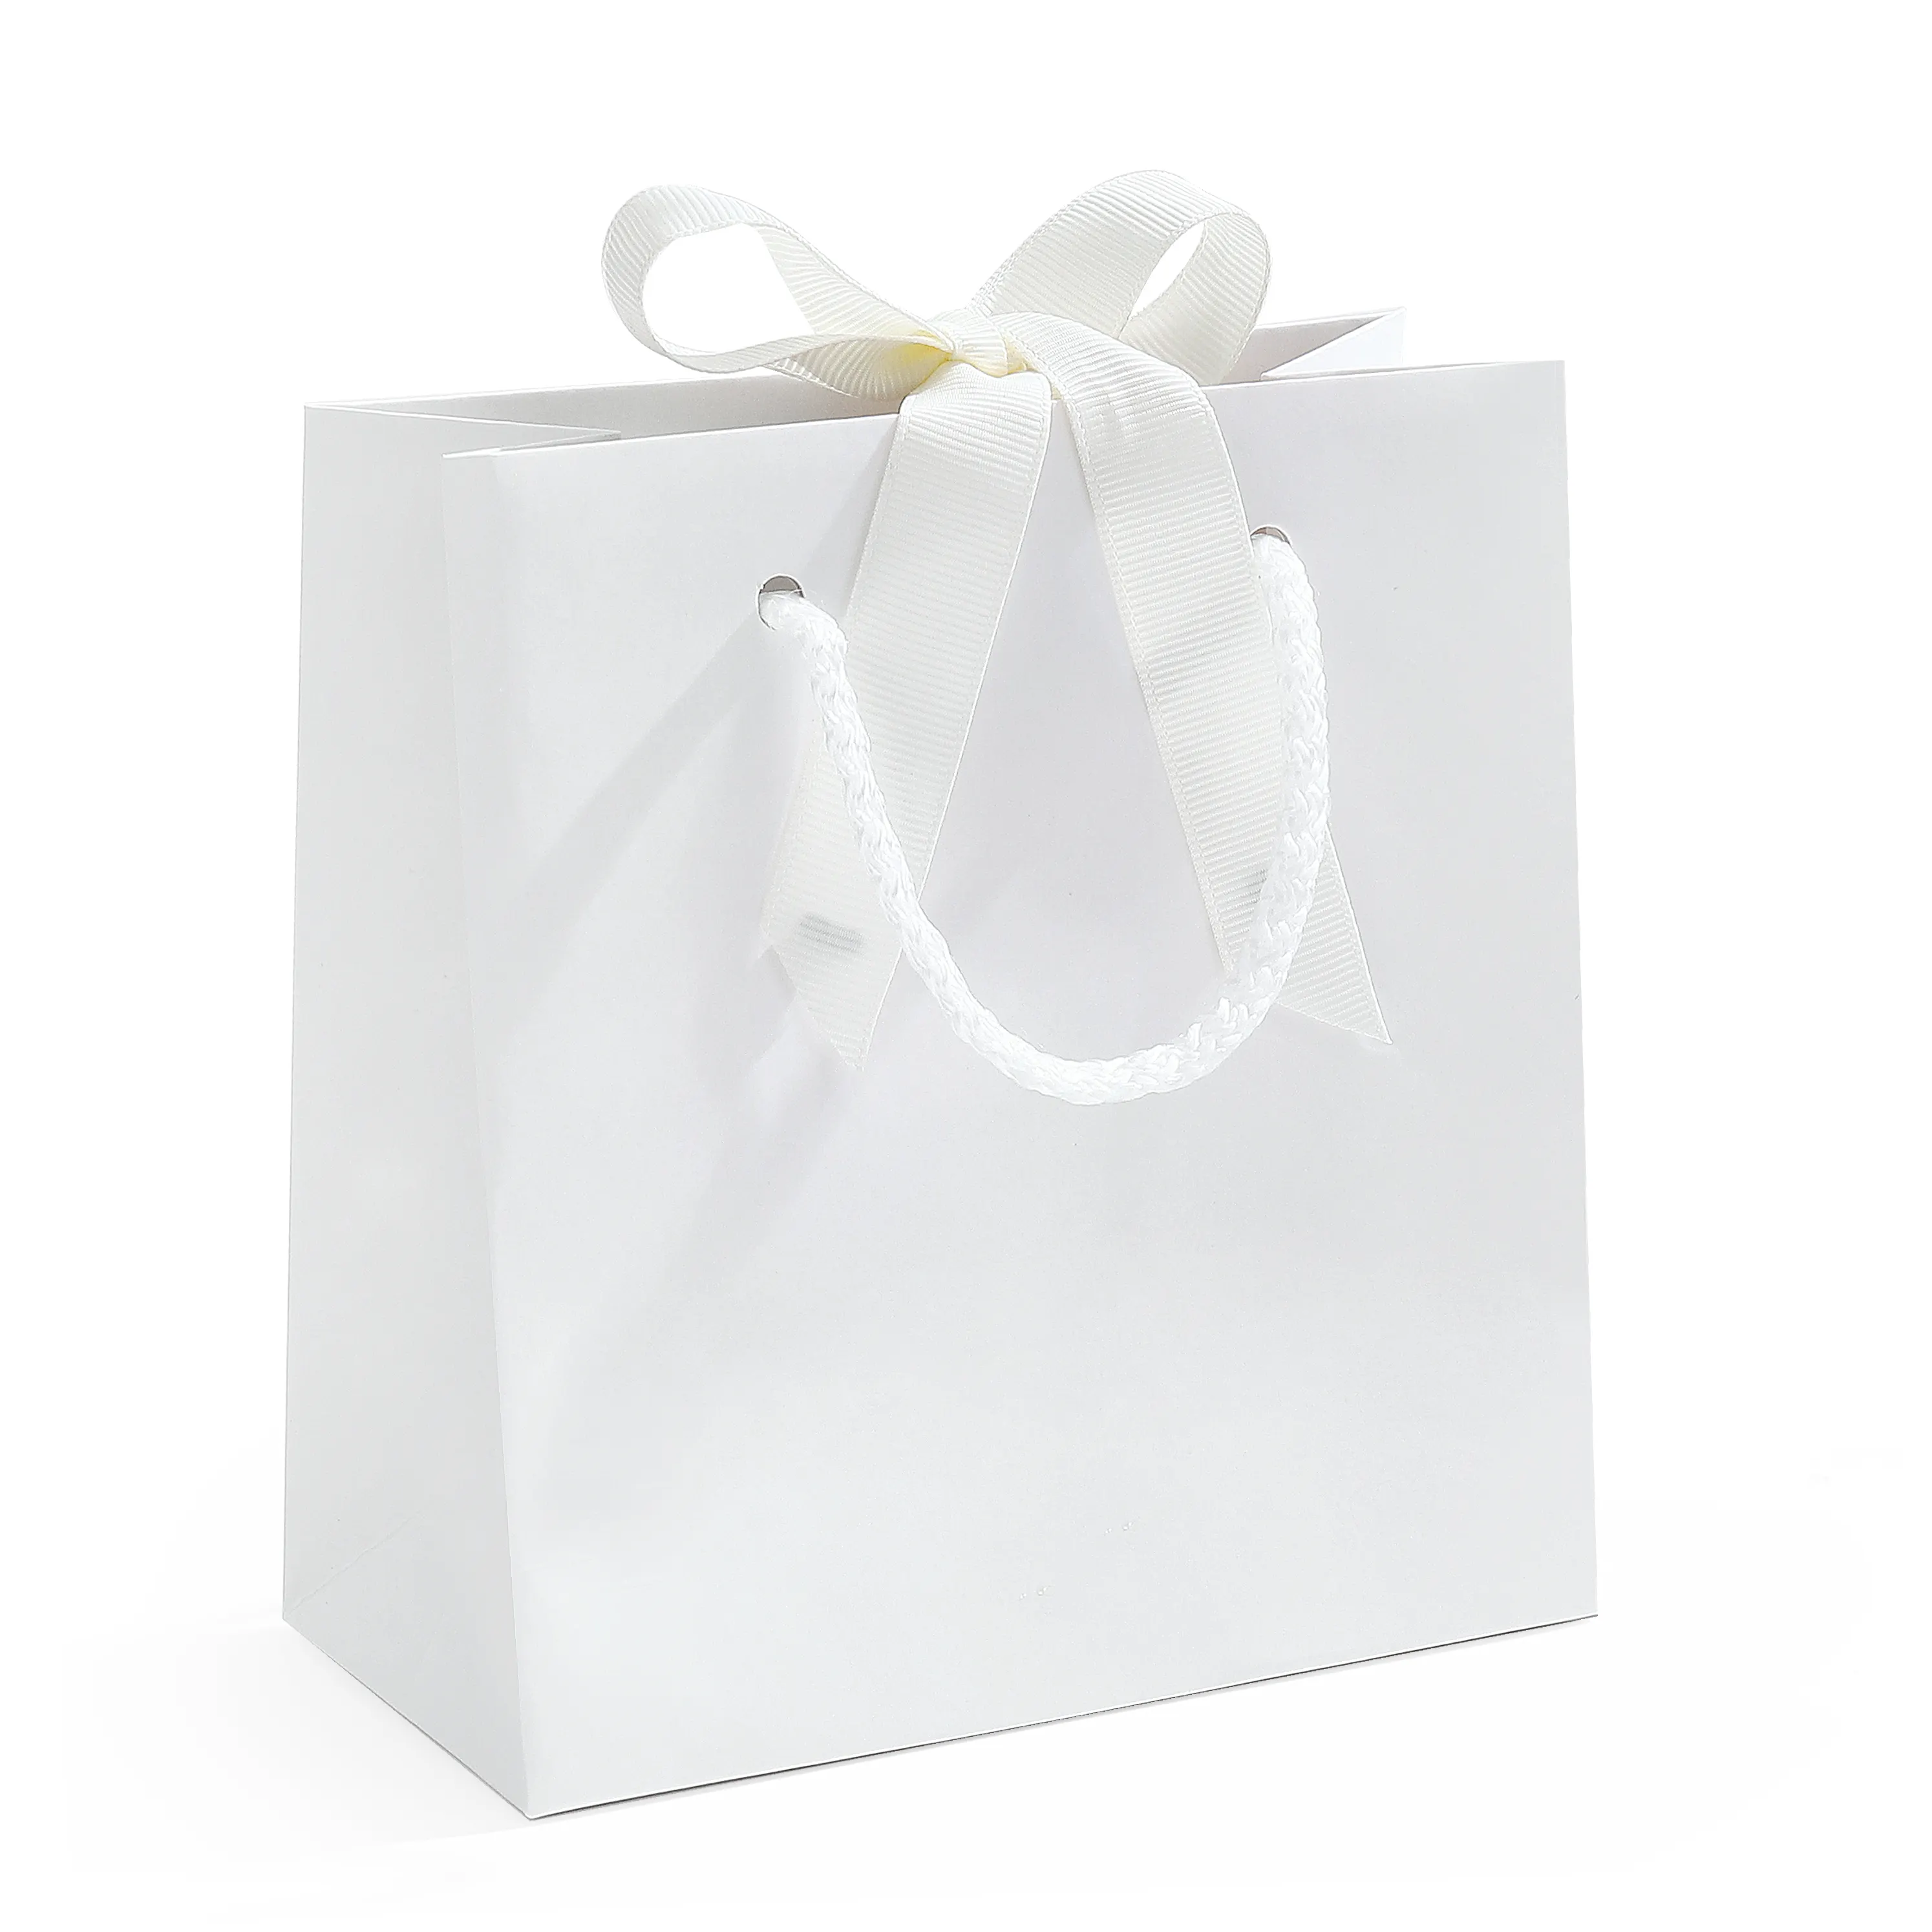 Bolsas de papel de Protección Ambiental Spot bolsos en blanco reutilizables embalaje de regalo atado blanco bolsas de papel de compras al por mayor